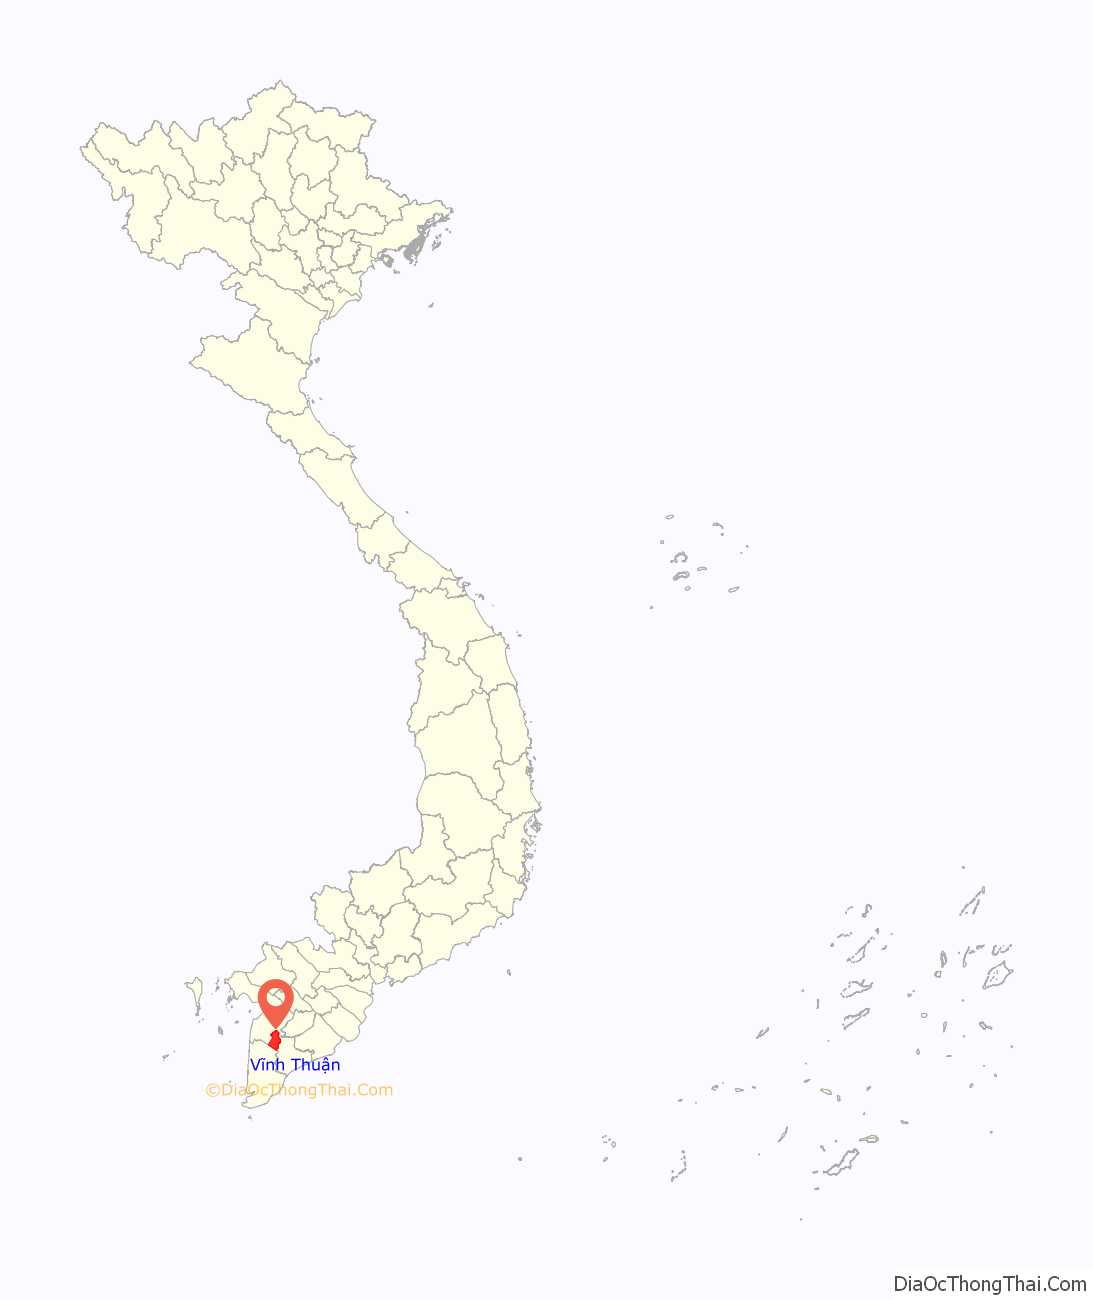 Huyện Vĩnh Thuận ở đâu? Vị trí của huyện Vĩnh Thuận